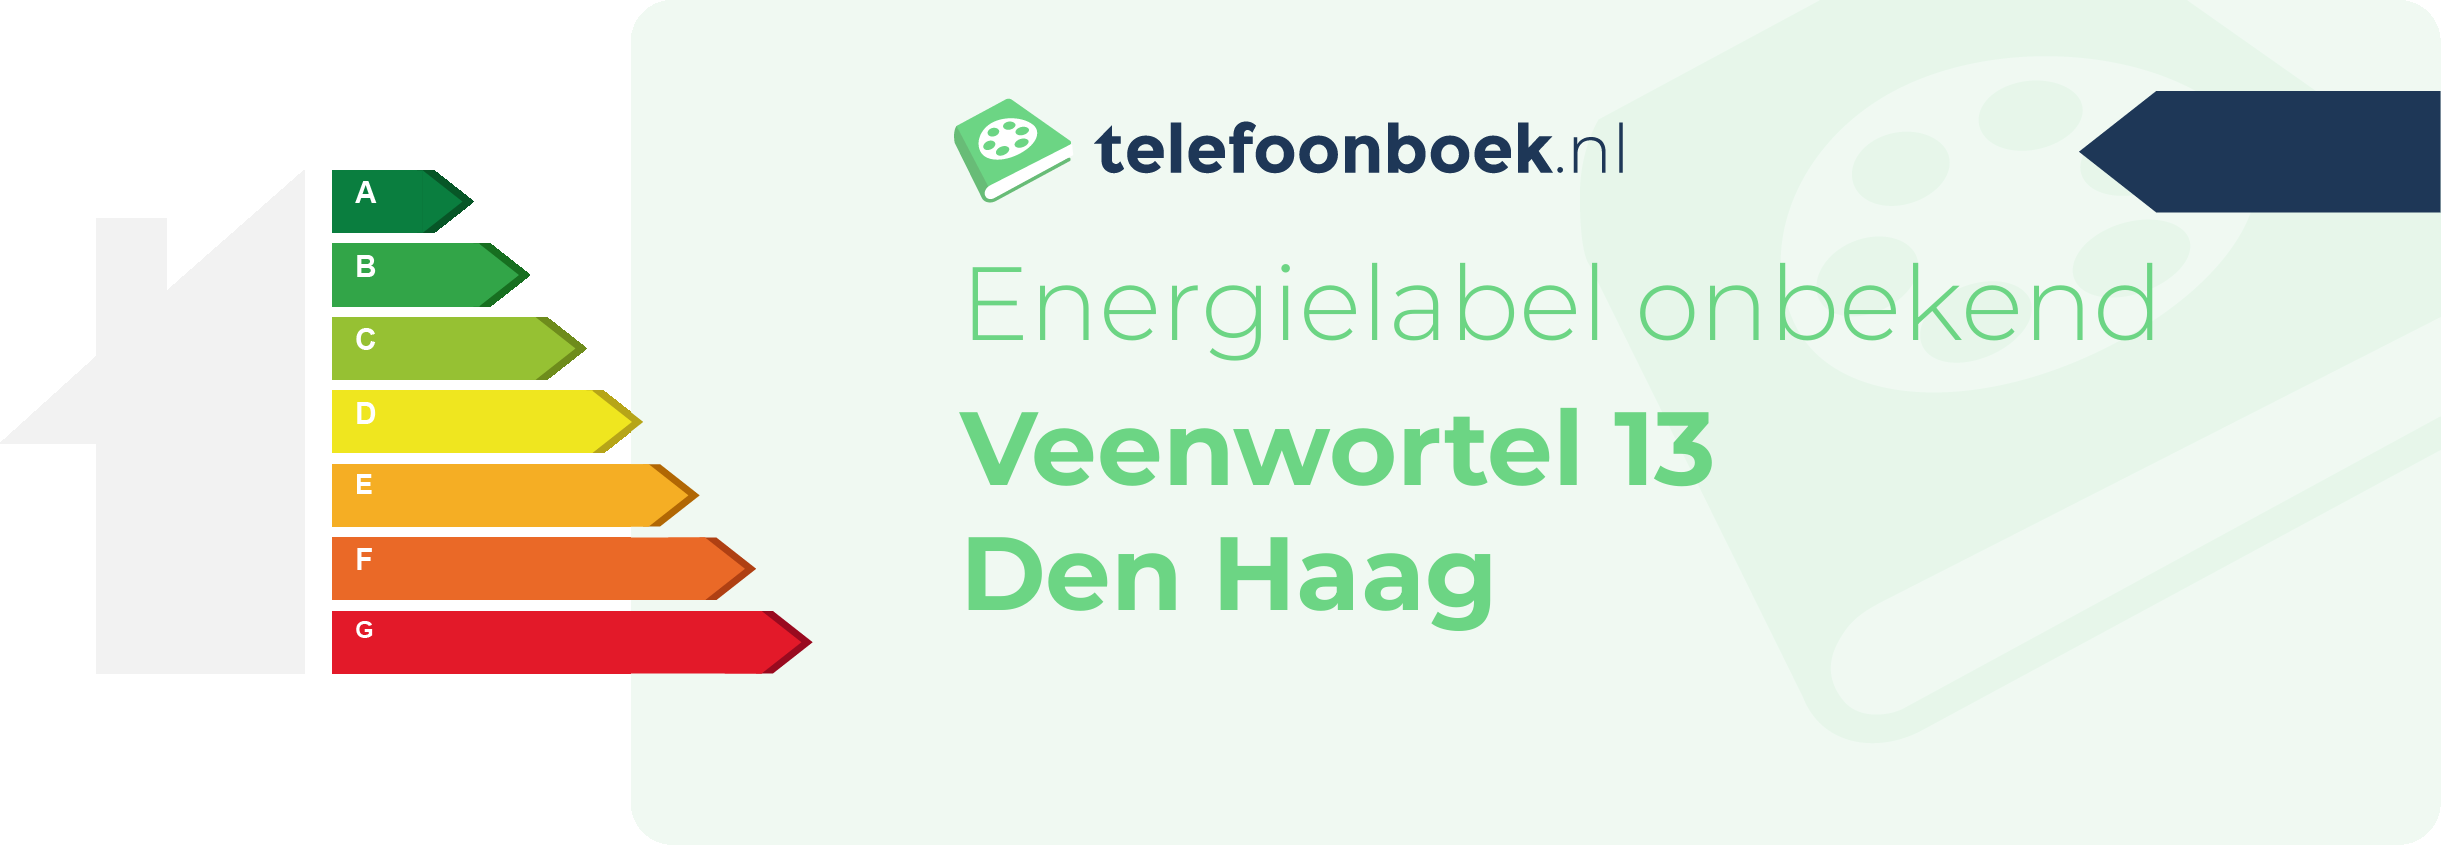 Energielabel Veenwortel 13 Den Haag